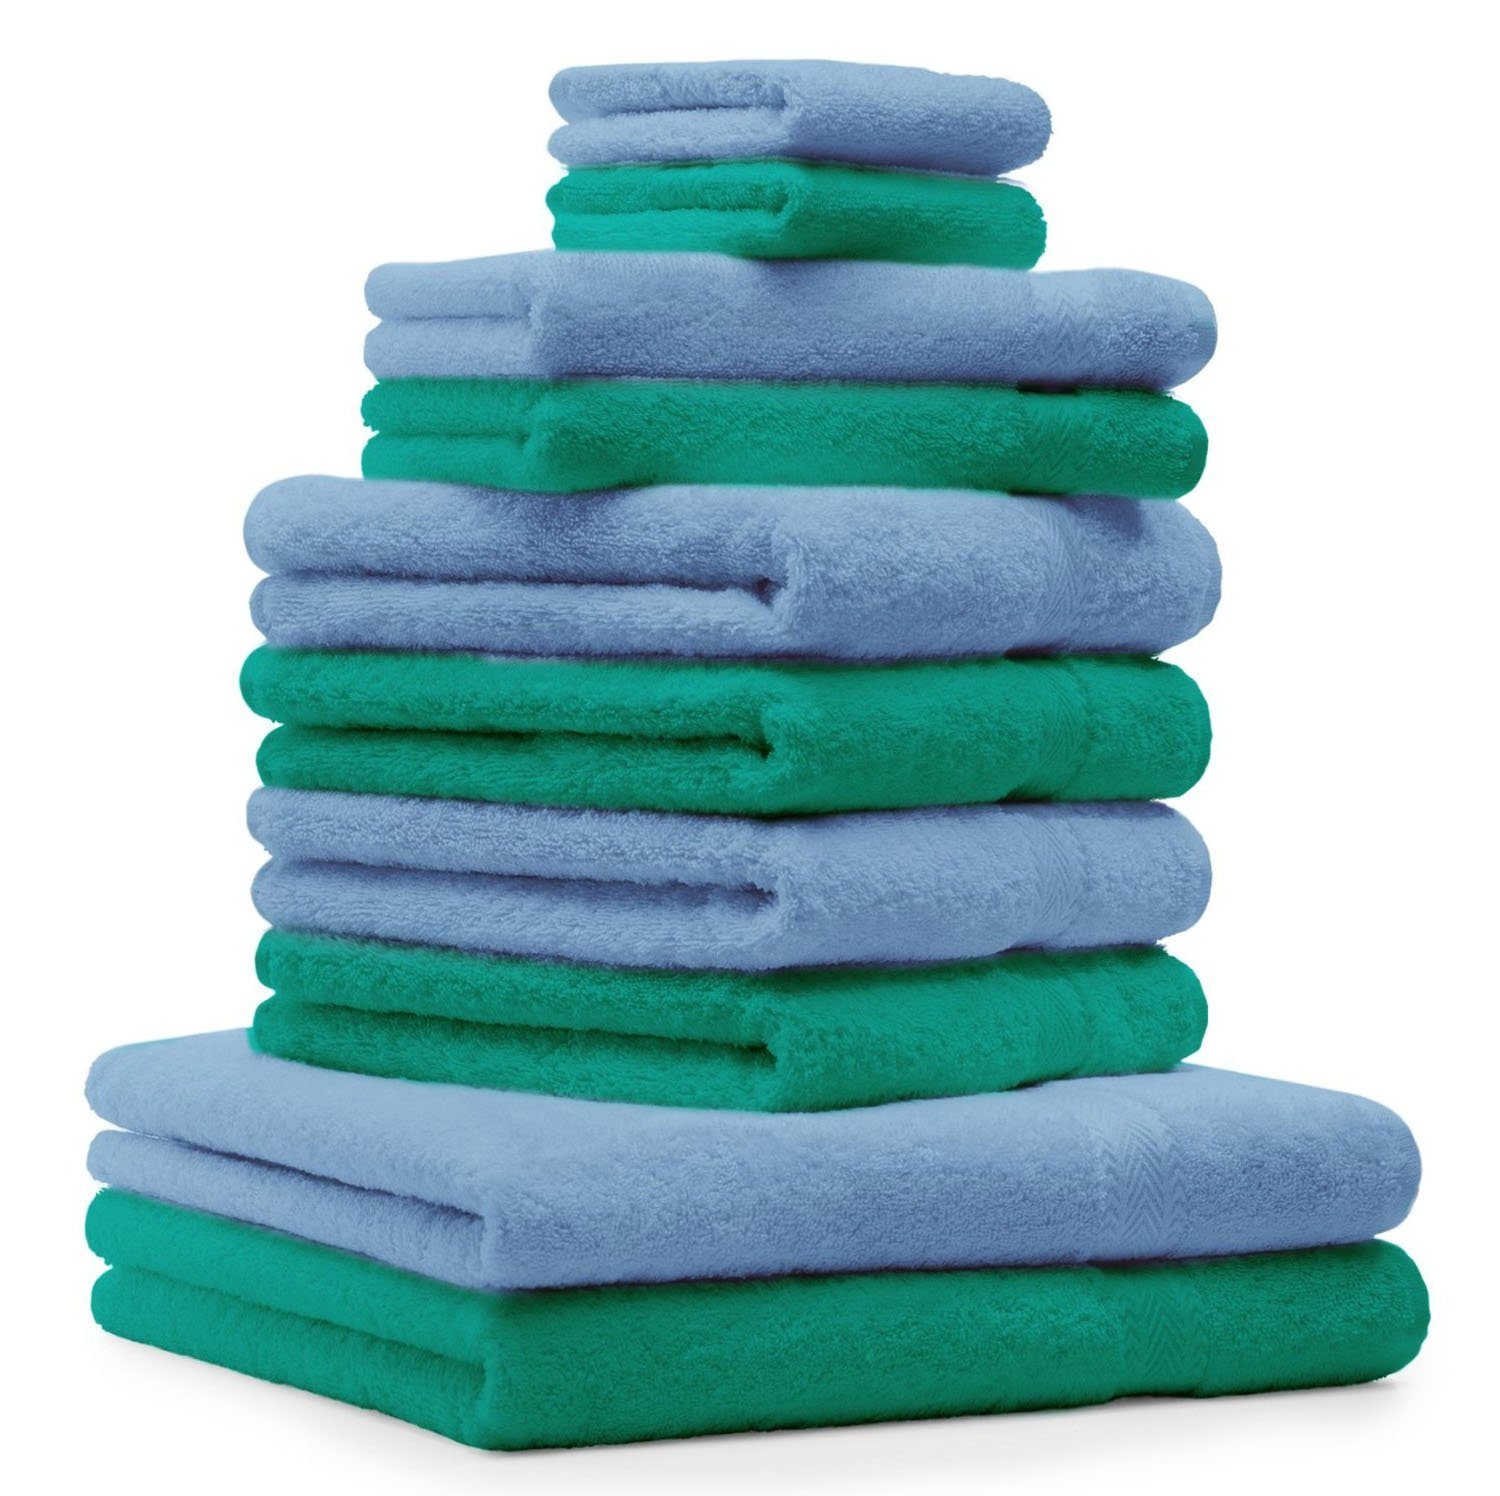 Handtuch-Set Handtuch und Set Baumwolle Classic Betz hellblau, Farbe smaragdgrün 100% 10-TLG.